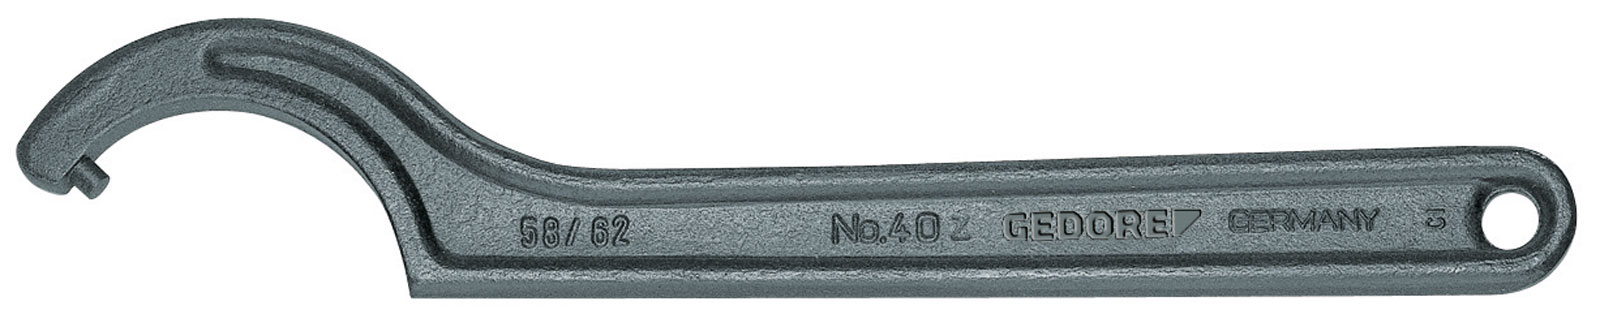 Bild von 40 Z 20-22 Hakenschlüssel, DIN 1810 Form B, 20-22 mm